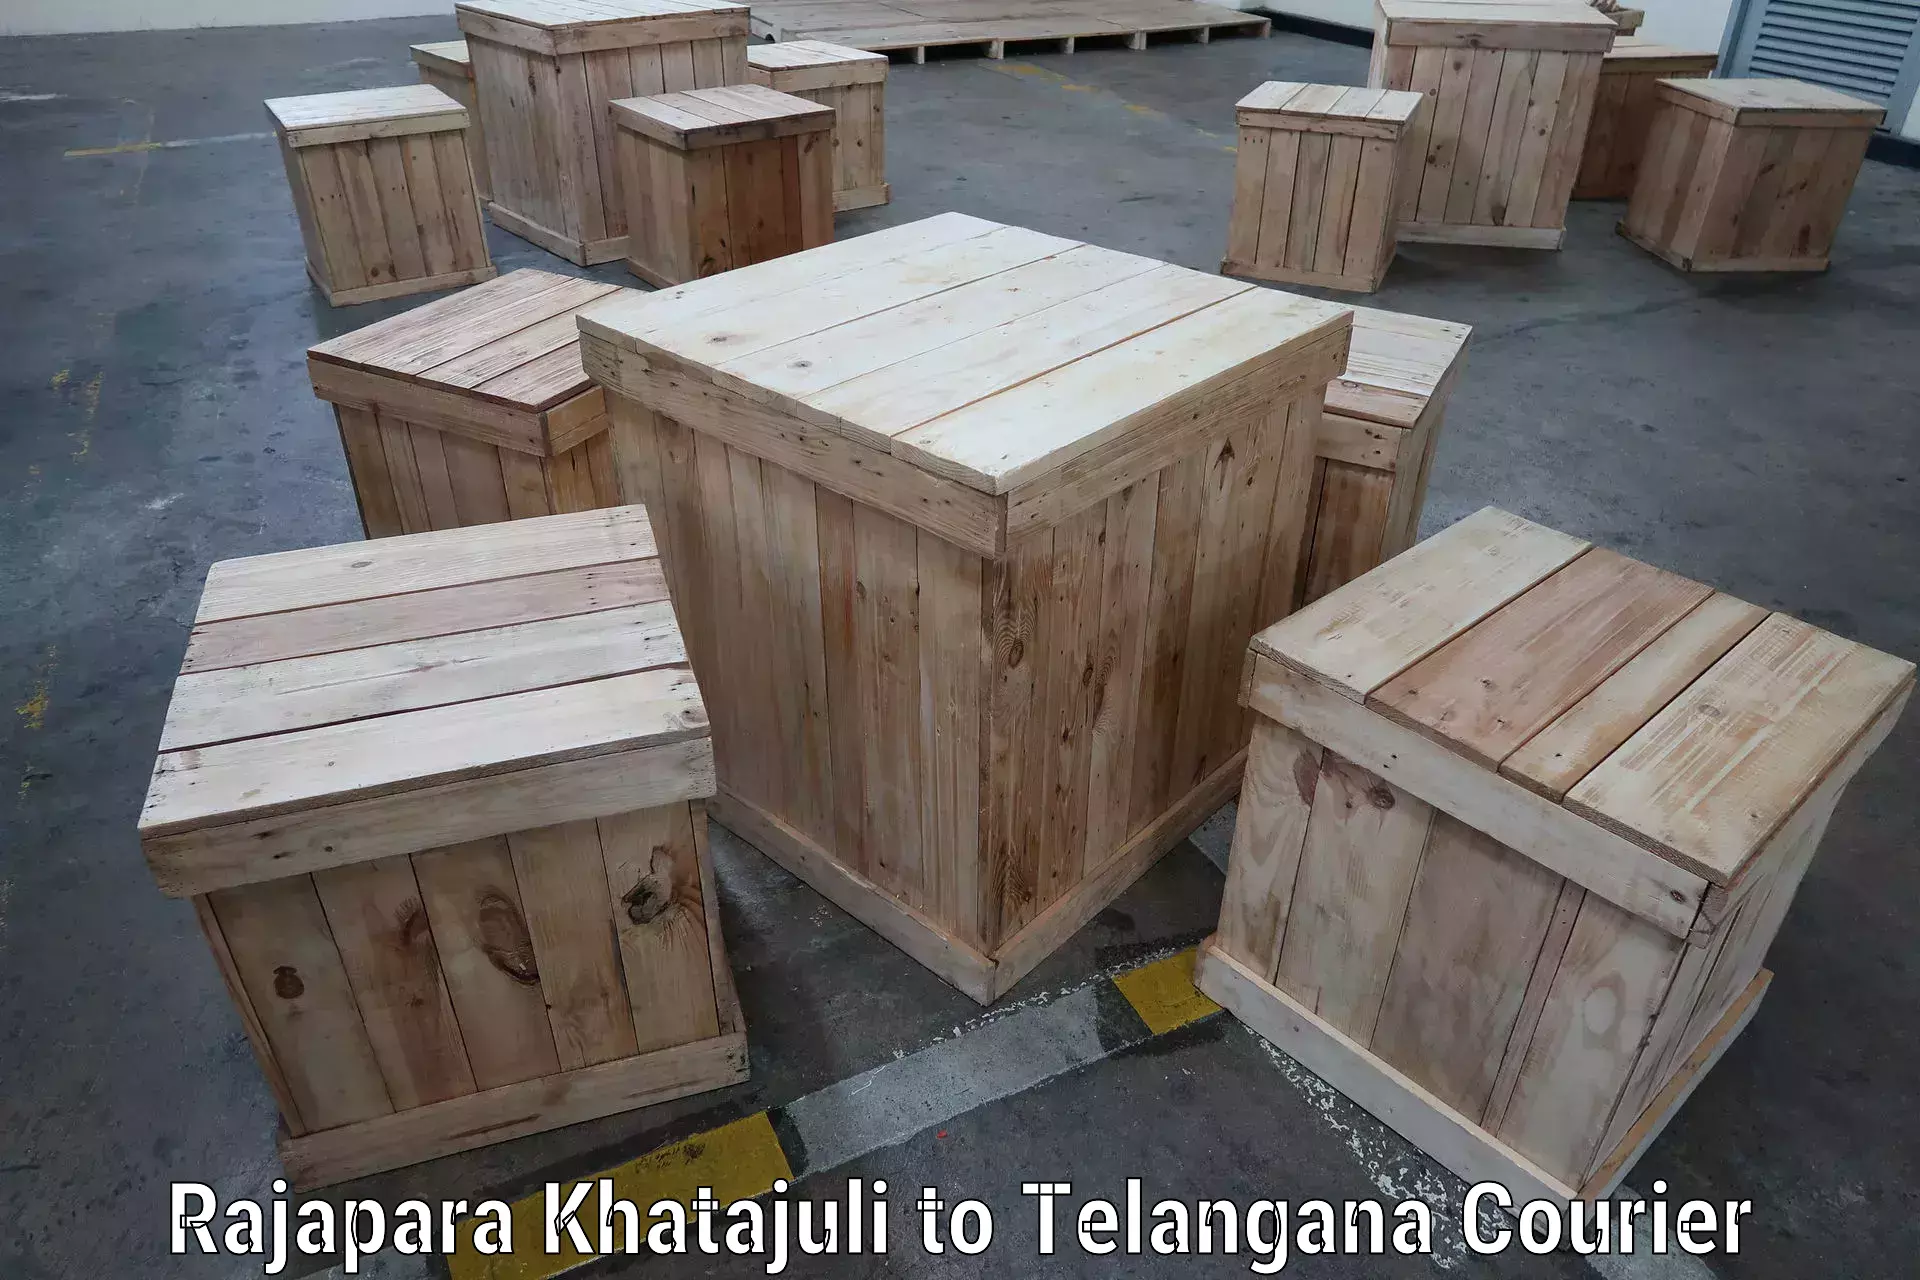 Secure packaging in Rajapara Khatajuli to Telangana